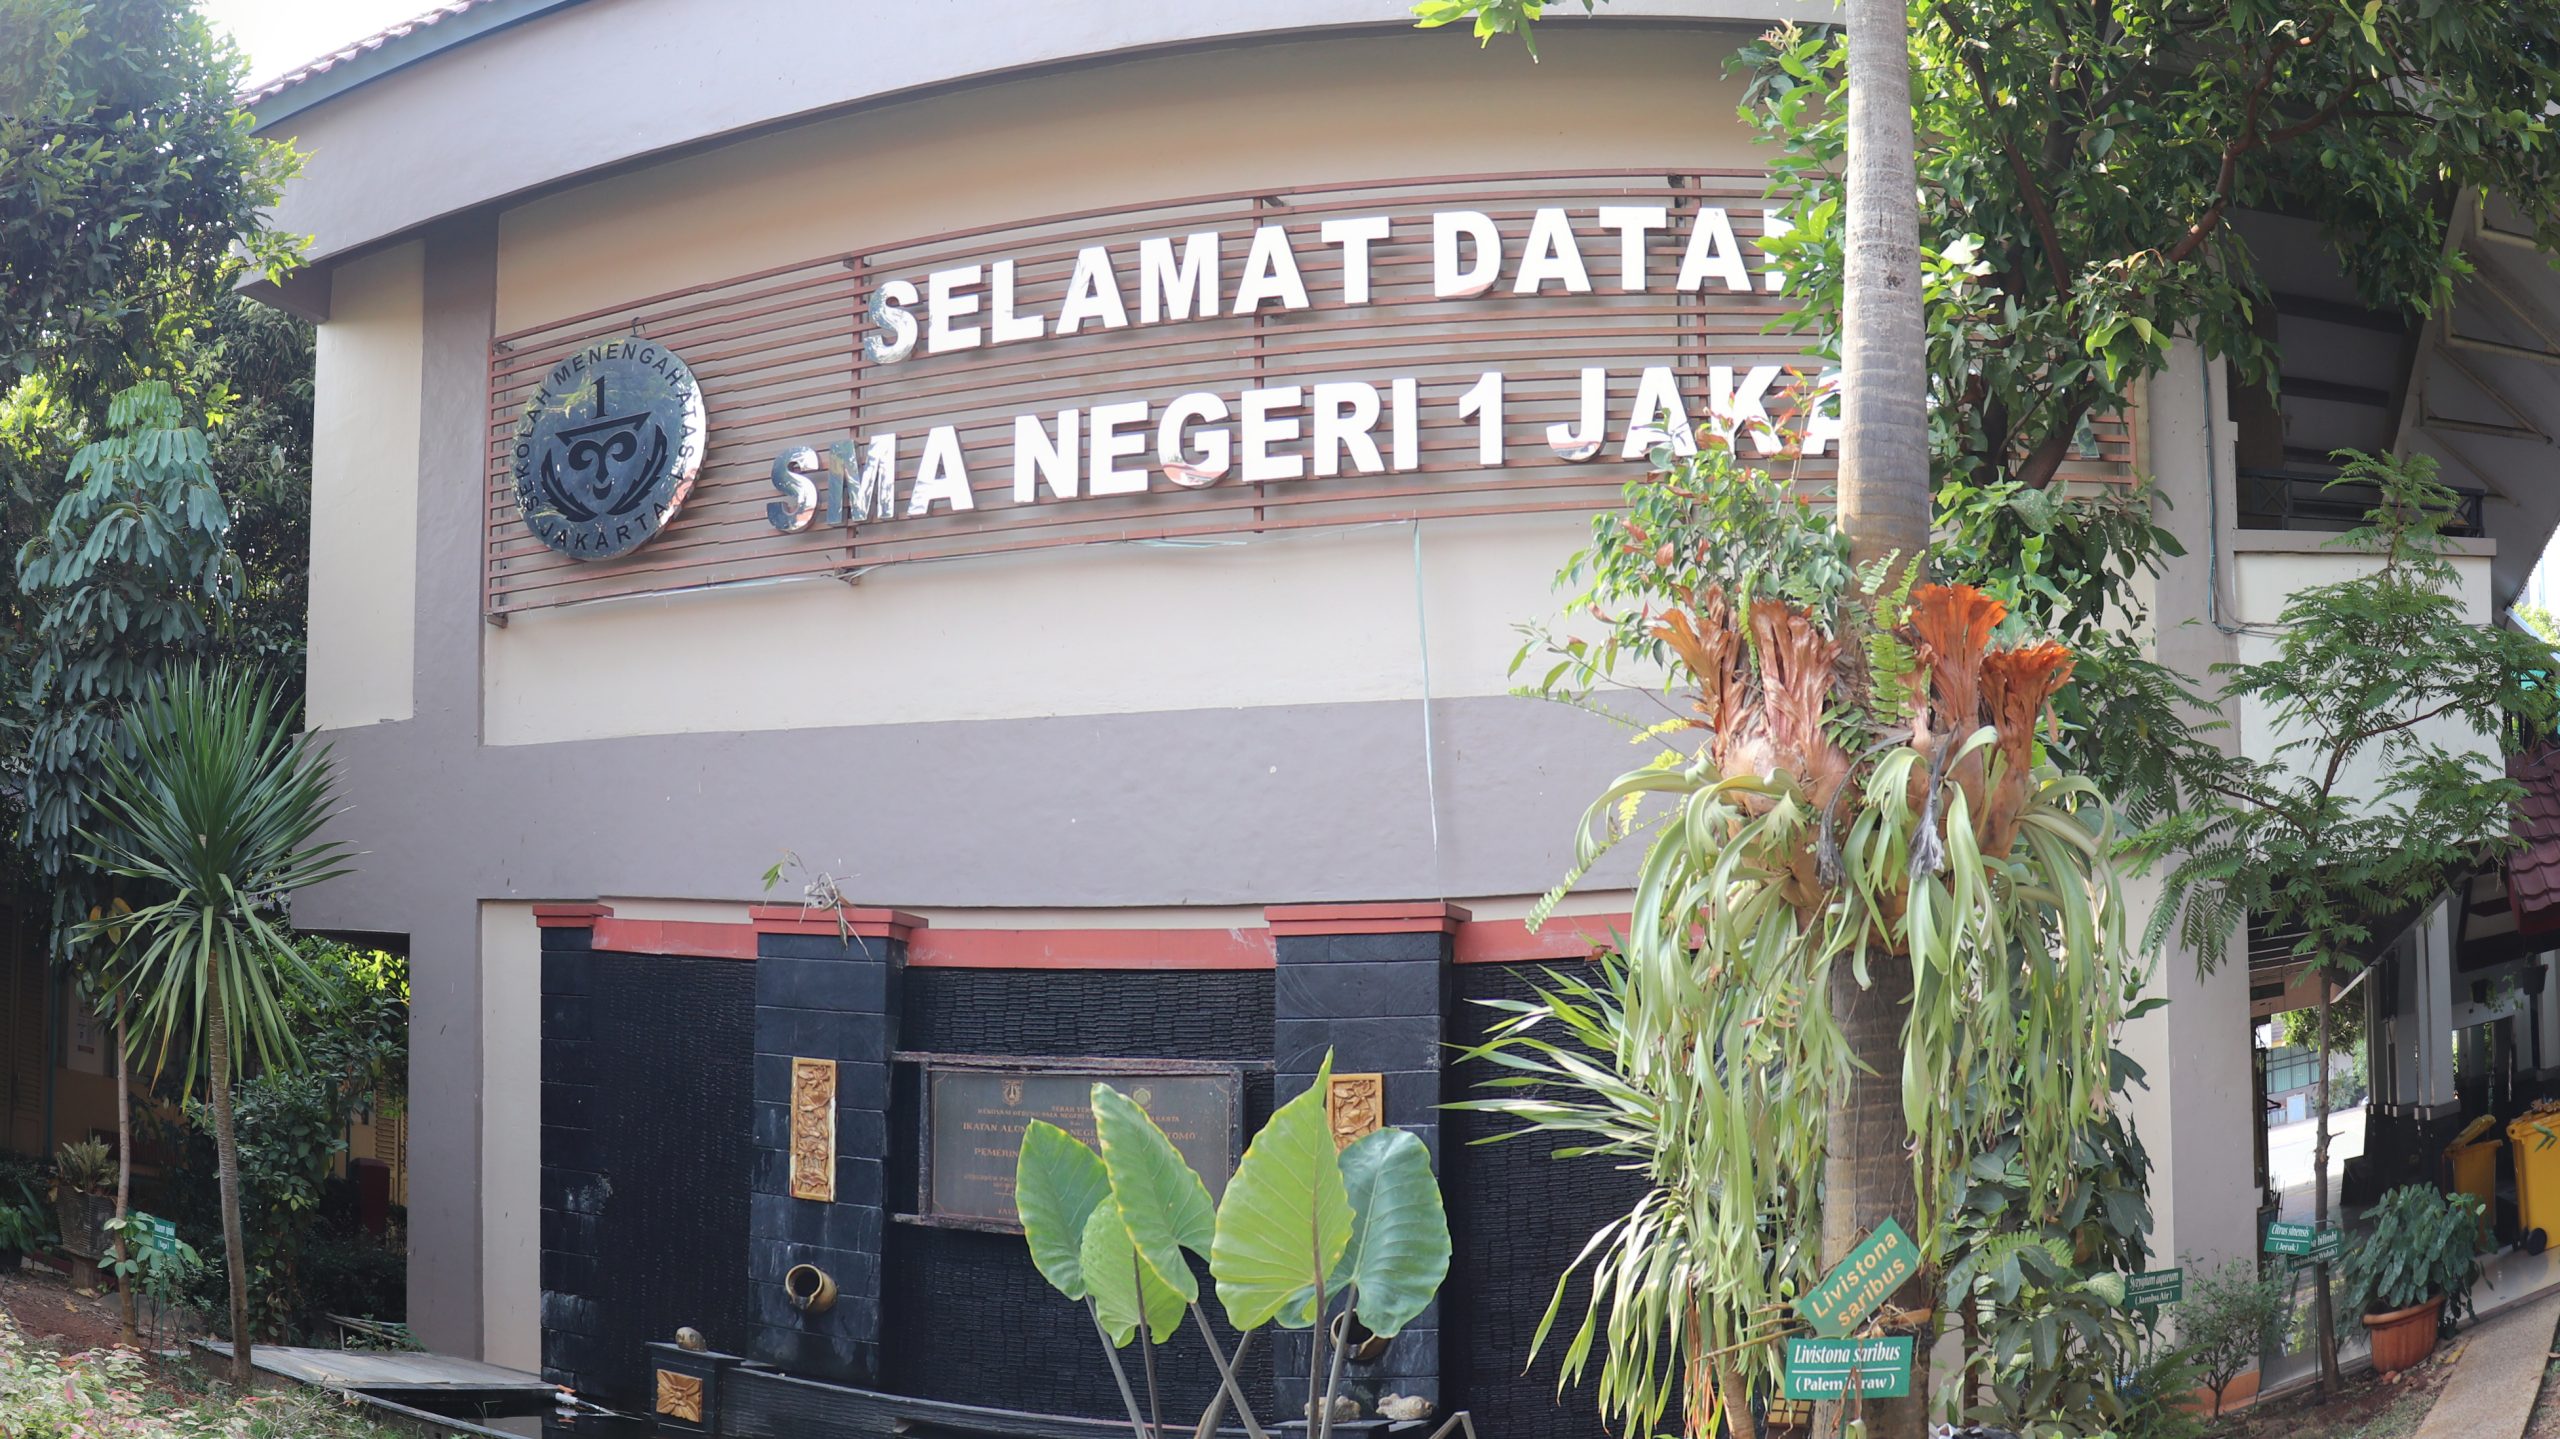 SMA Negeri 1 Jakarta